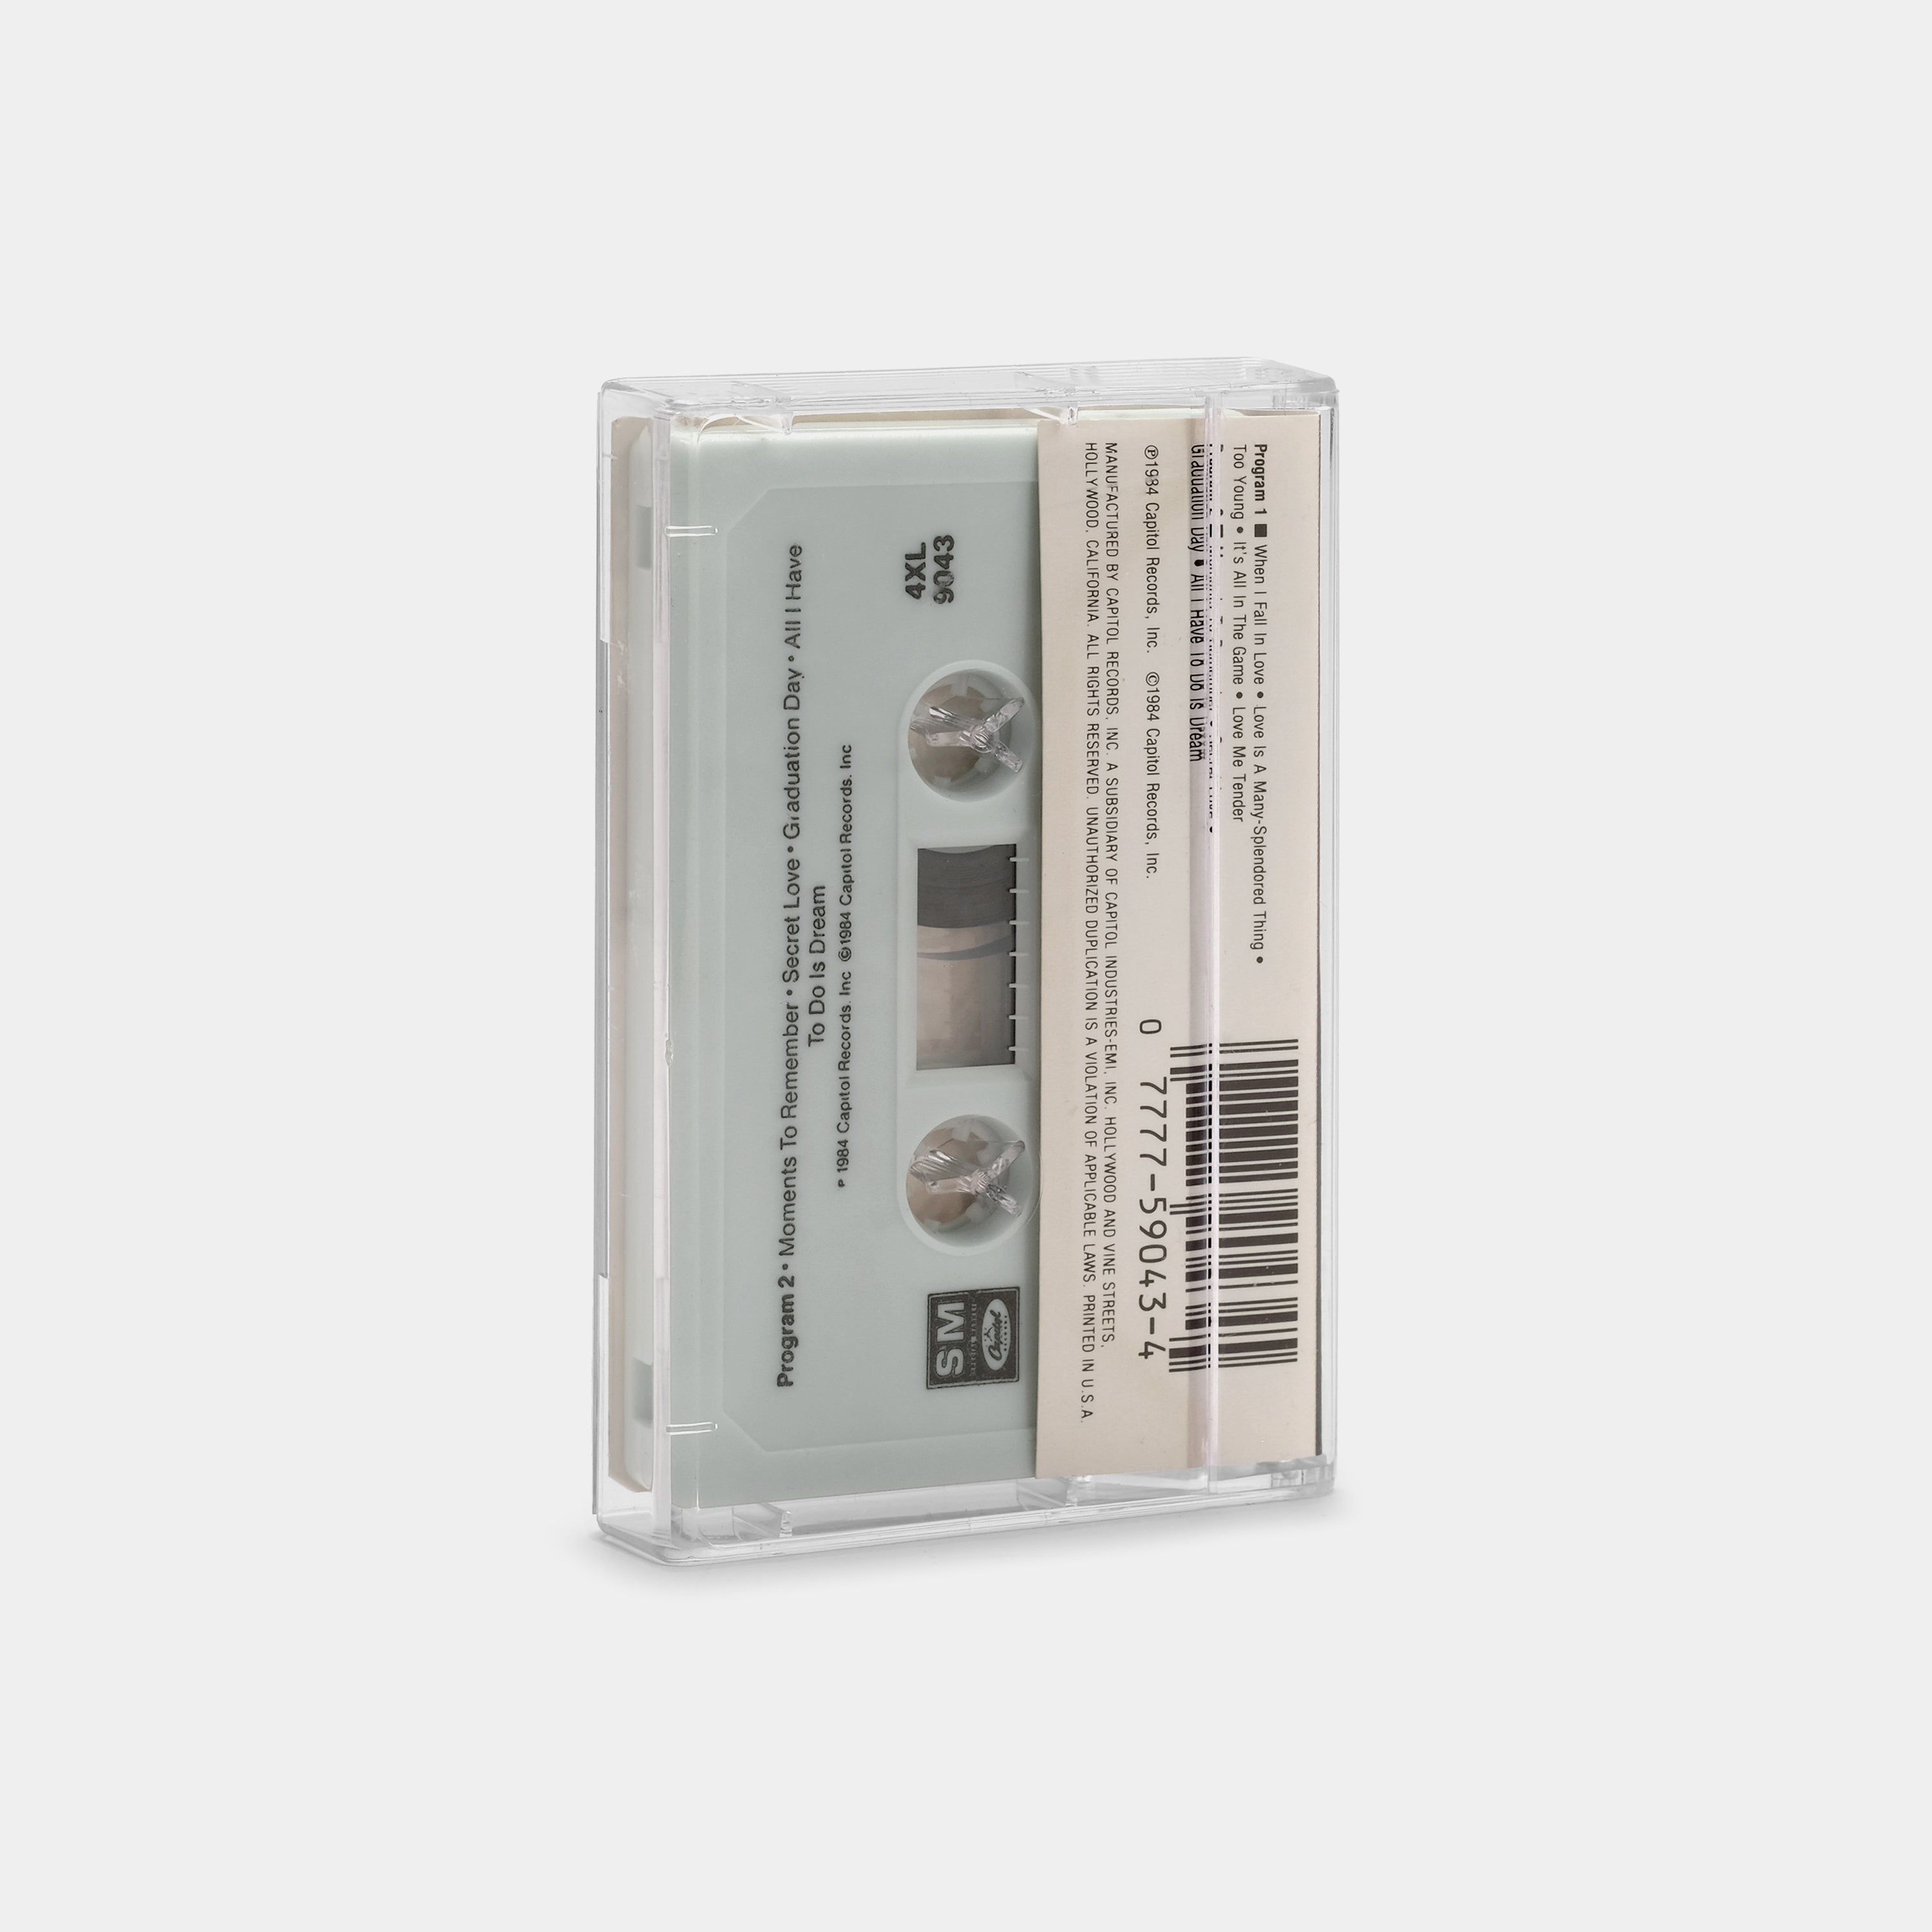 The Lettermen - In Love With The Lettermen Cassette Tape